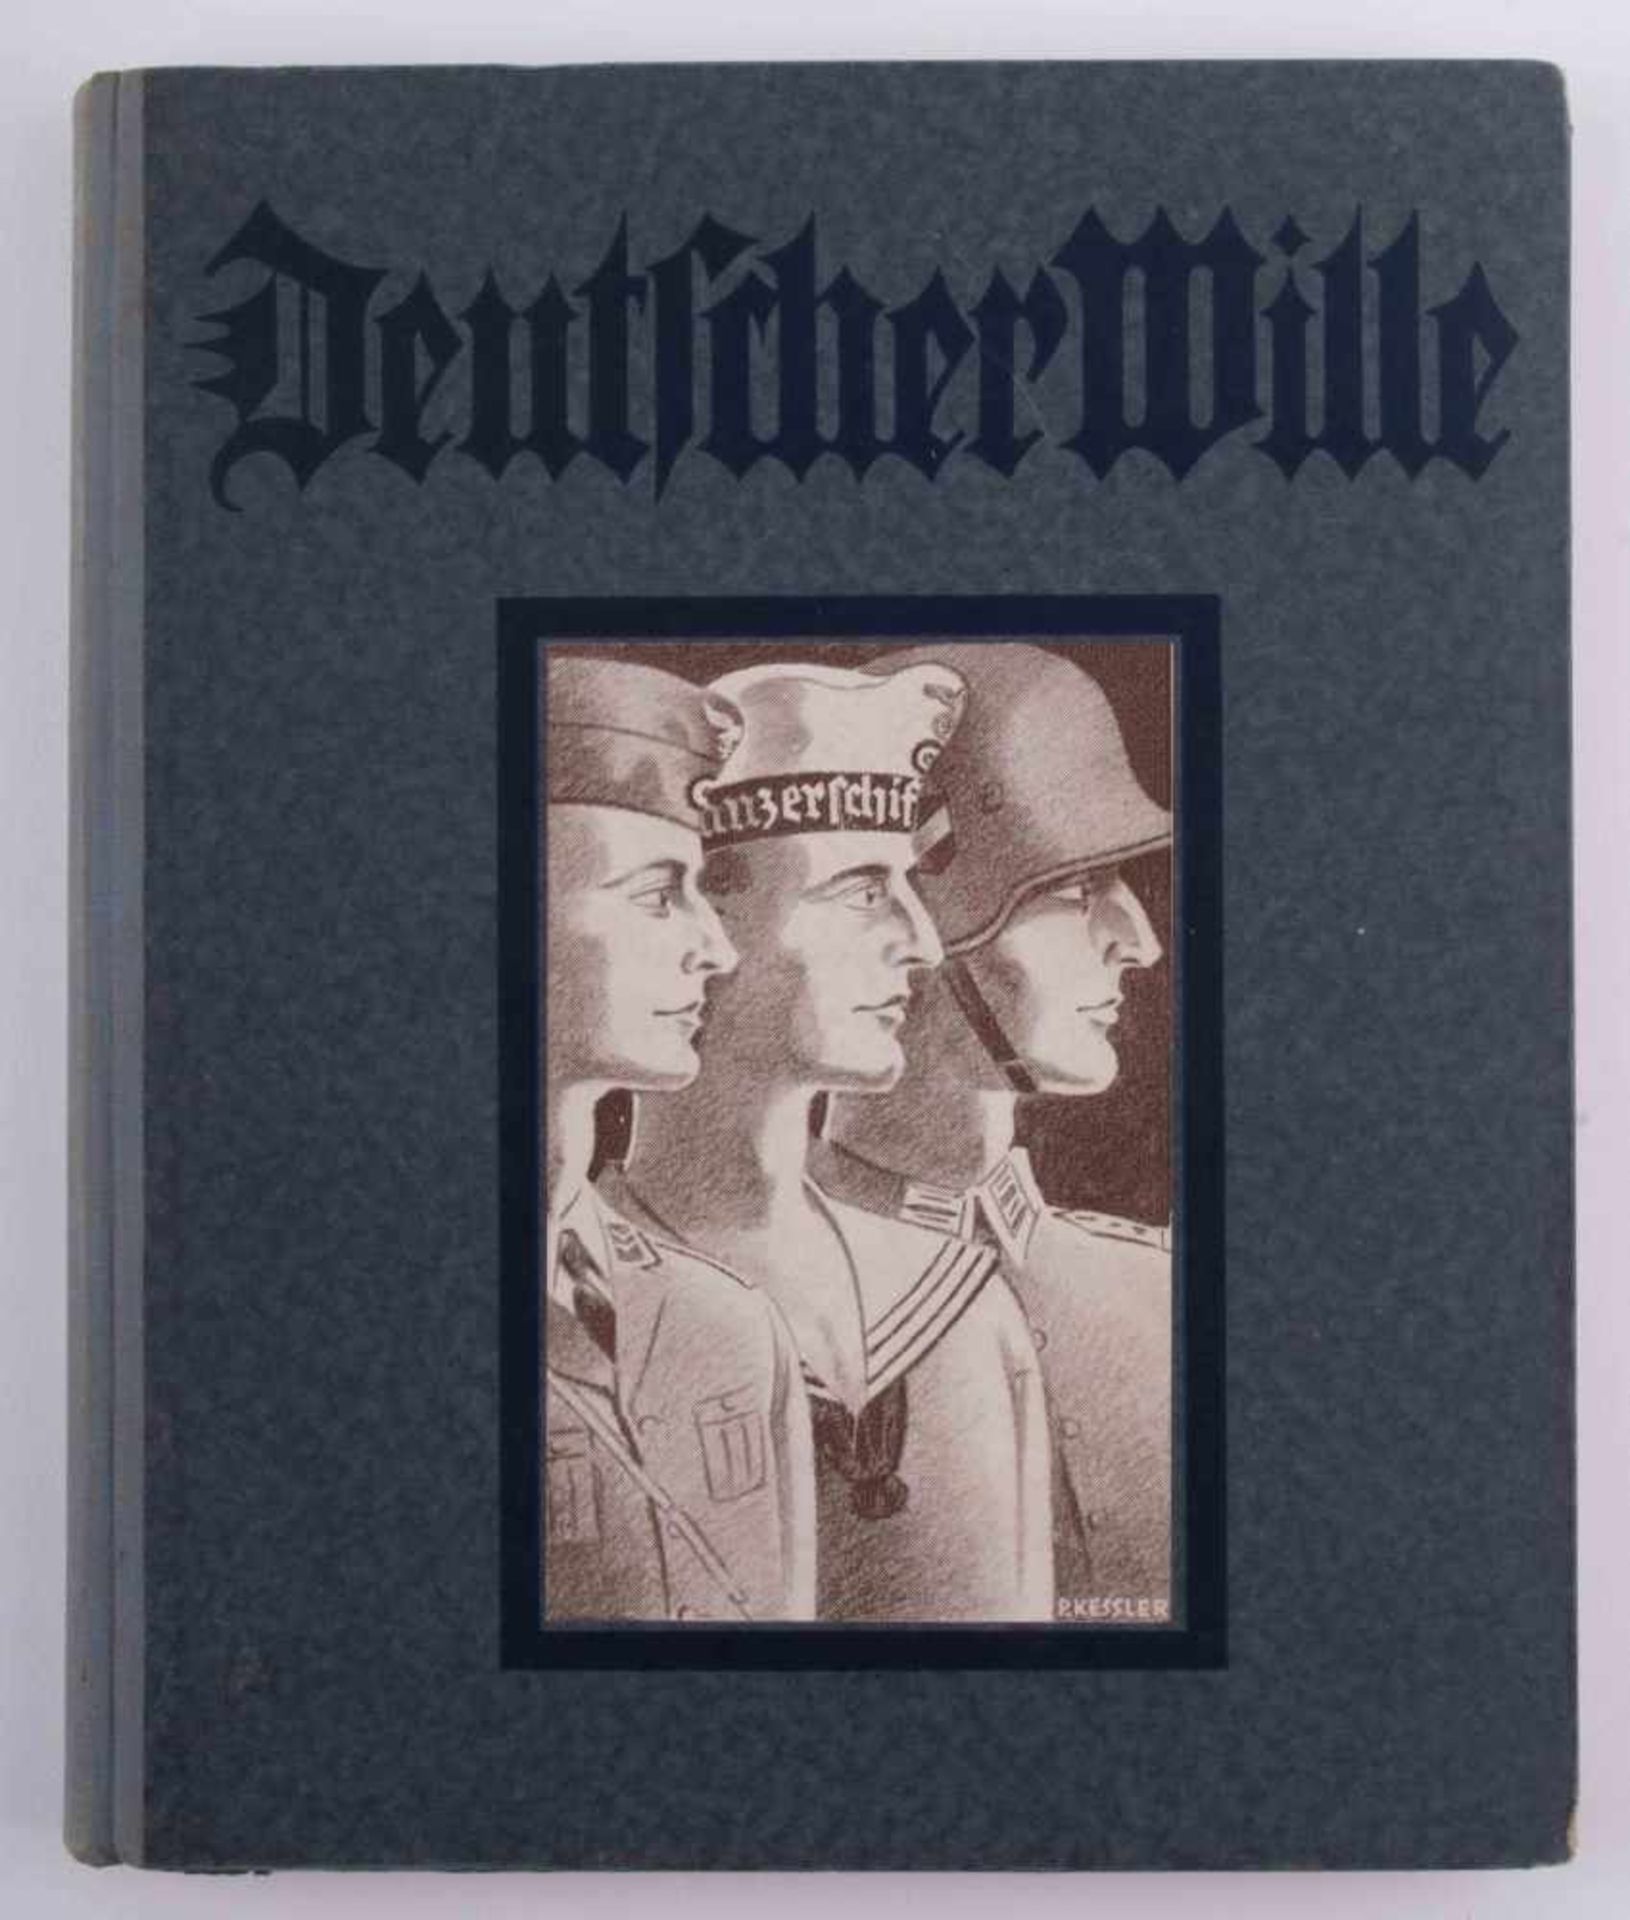 Deutscher Wille.,Jahrbuch 1936. Birkenwerder bei Berlin: Verlag Deutscher Wille. 1936 25 cm x 21 cm.